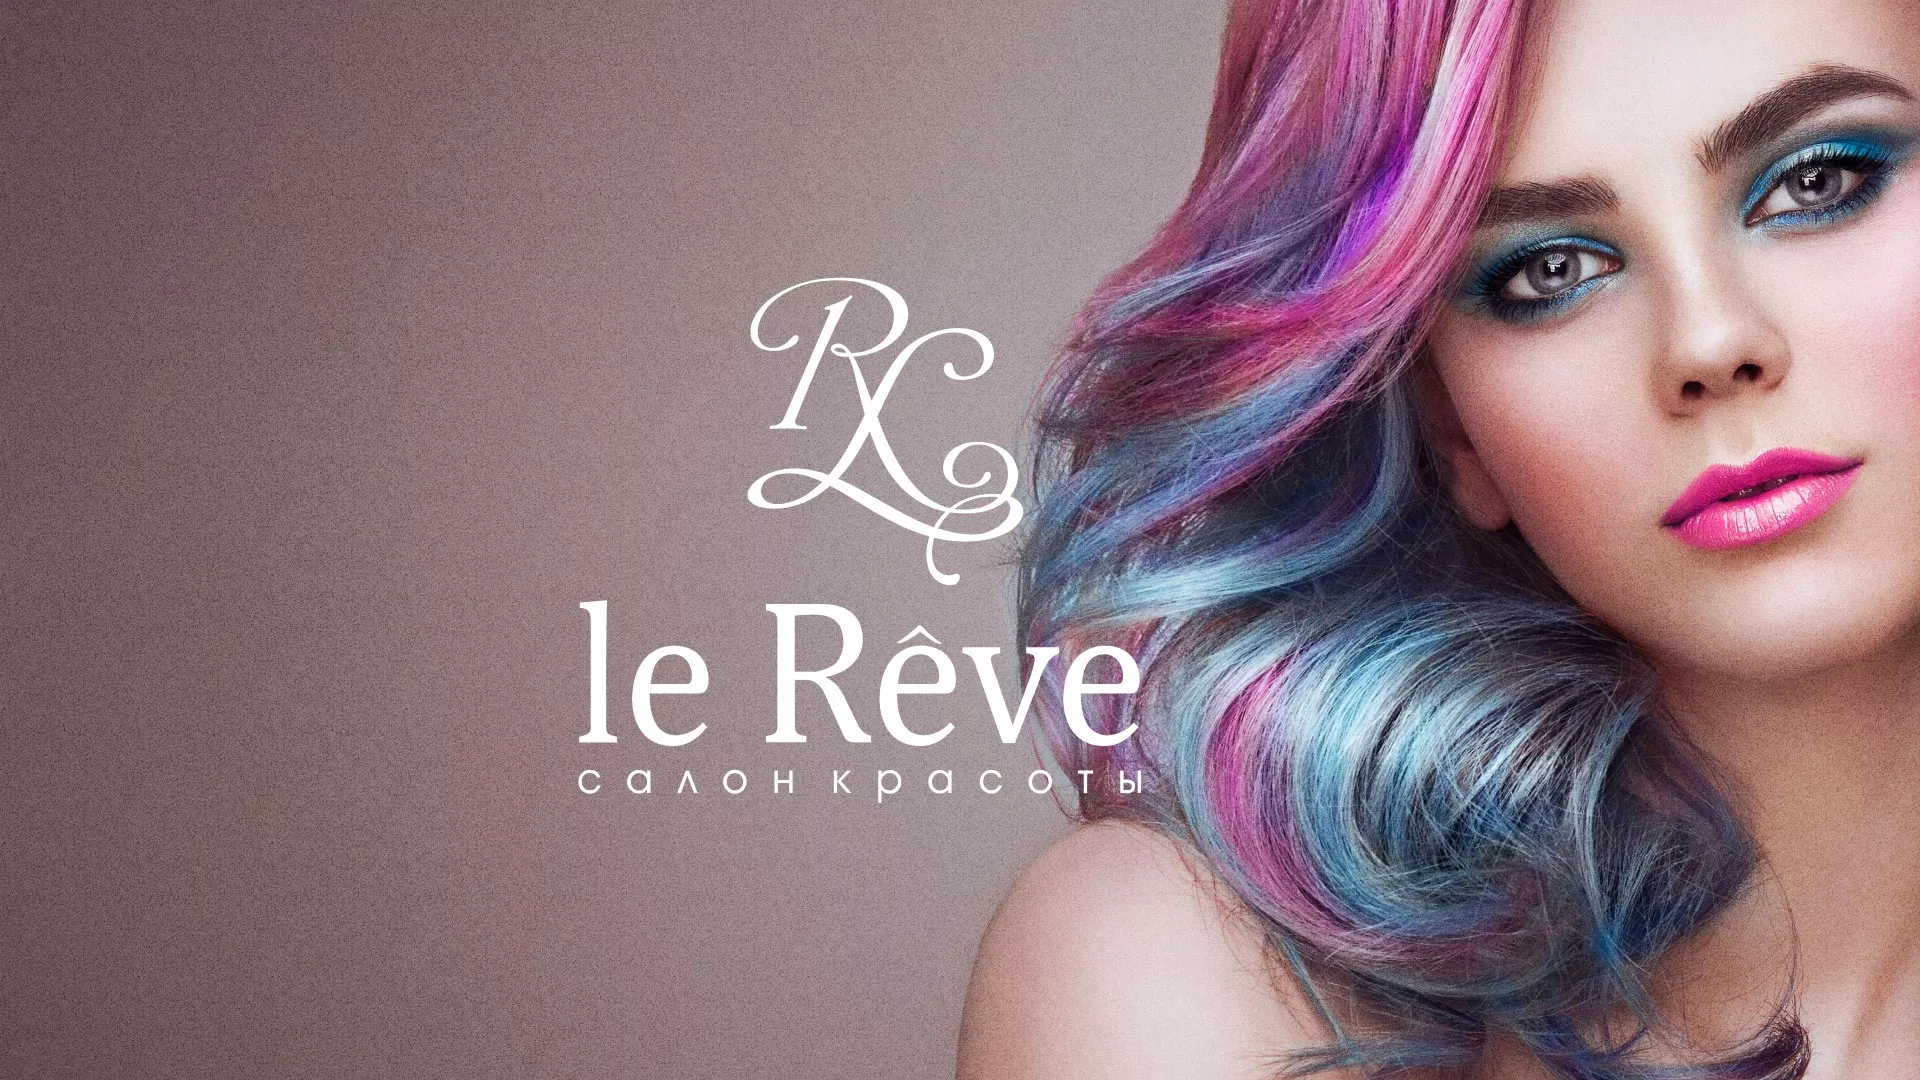 Создание сайта для салона красоты «Le Reve» в Малоархангельске